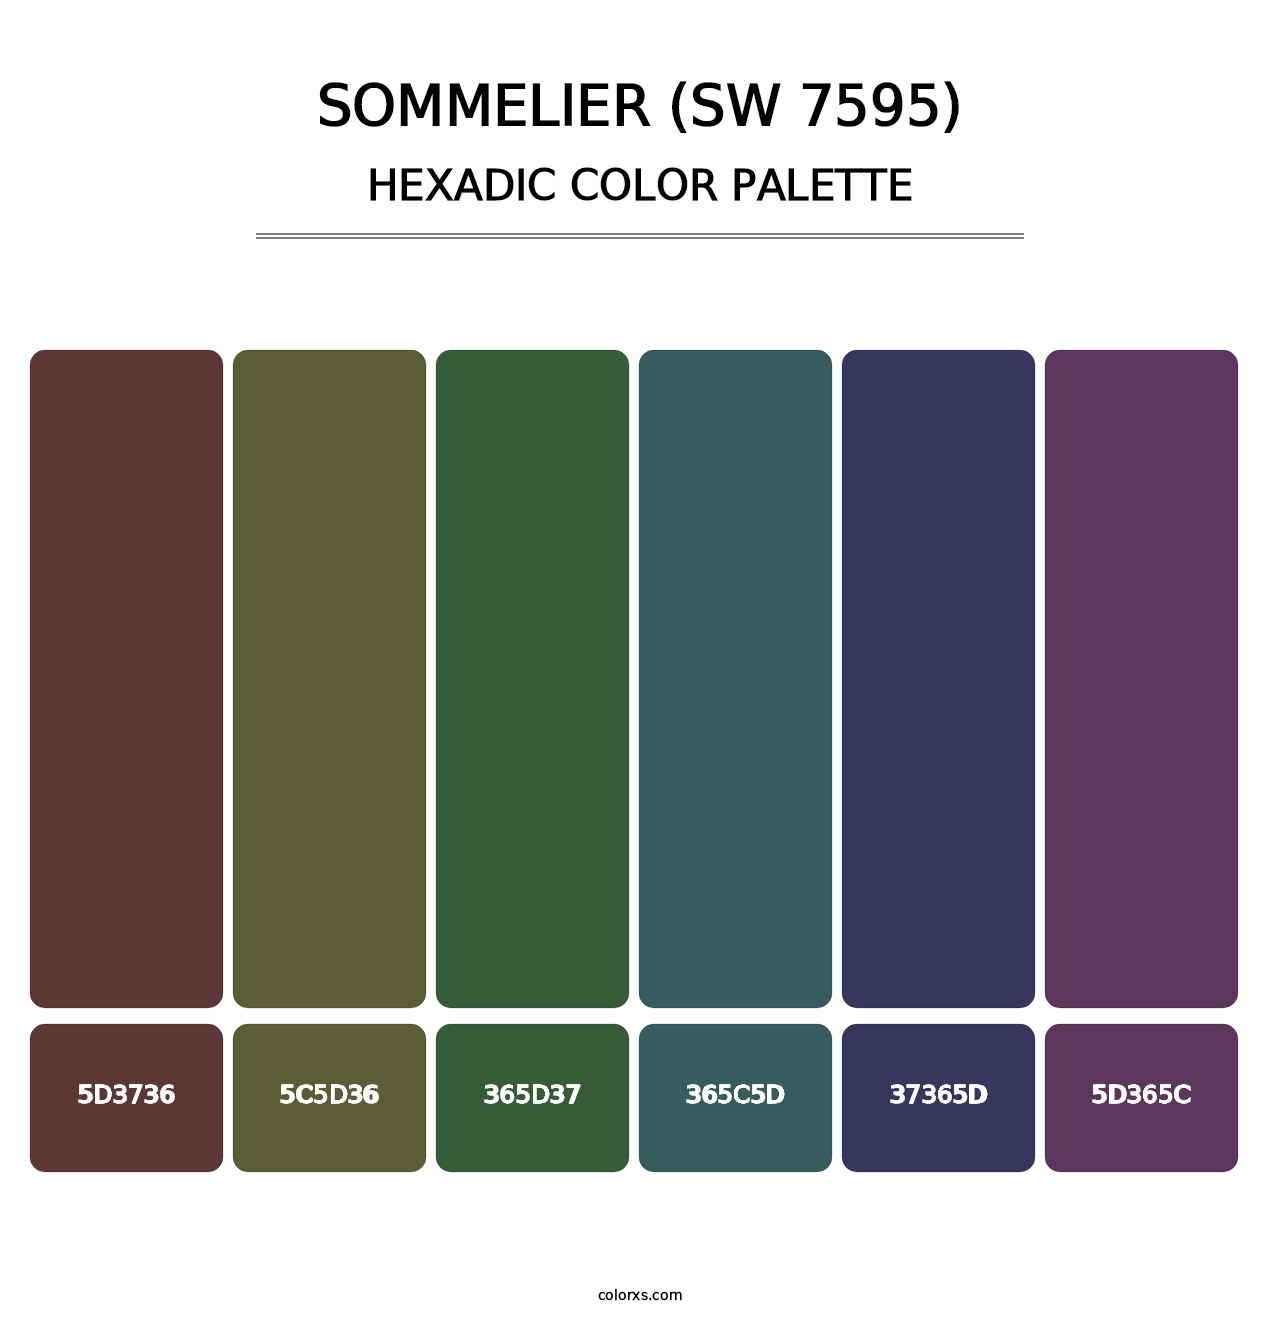 Sommelier (SW 7595) - Hexadic Color Palette